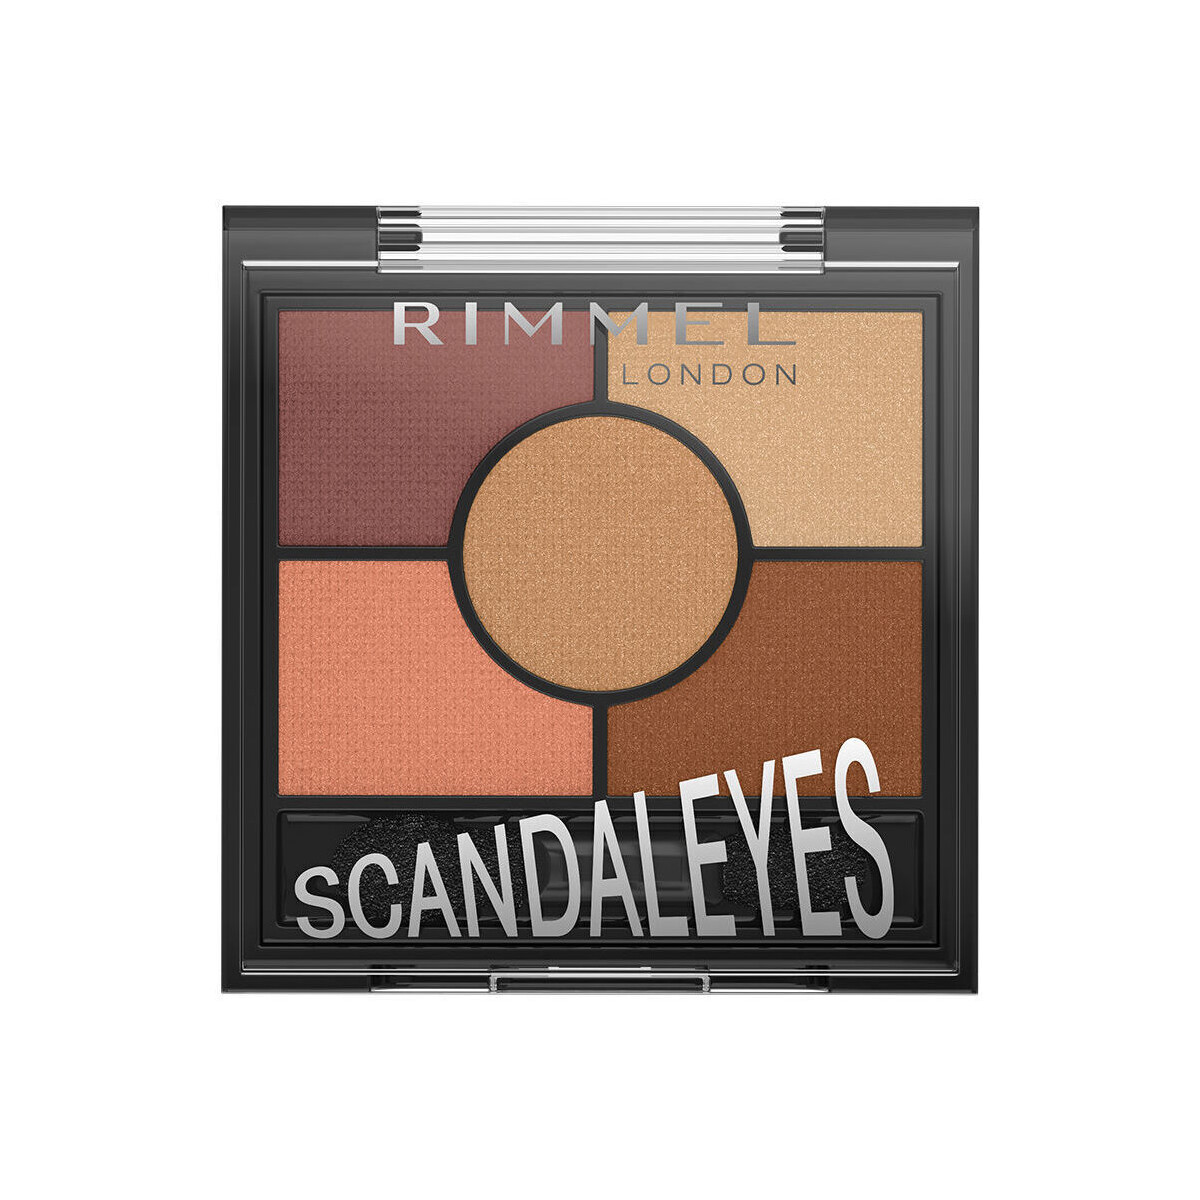 Beauté Femme Fards à paupières & bases Rimmel London Palette D&39;ombres Scandaleyes 005-bronze Coucher De Soleil 